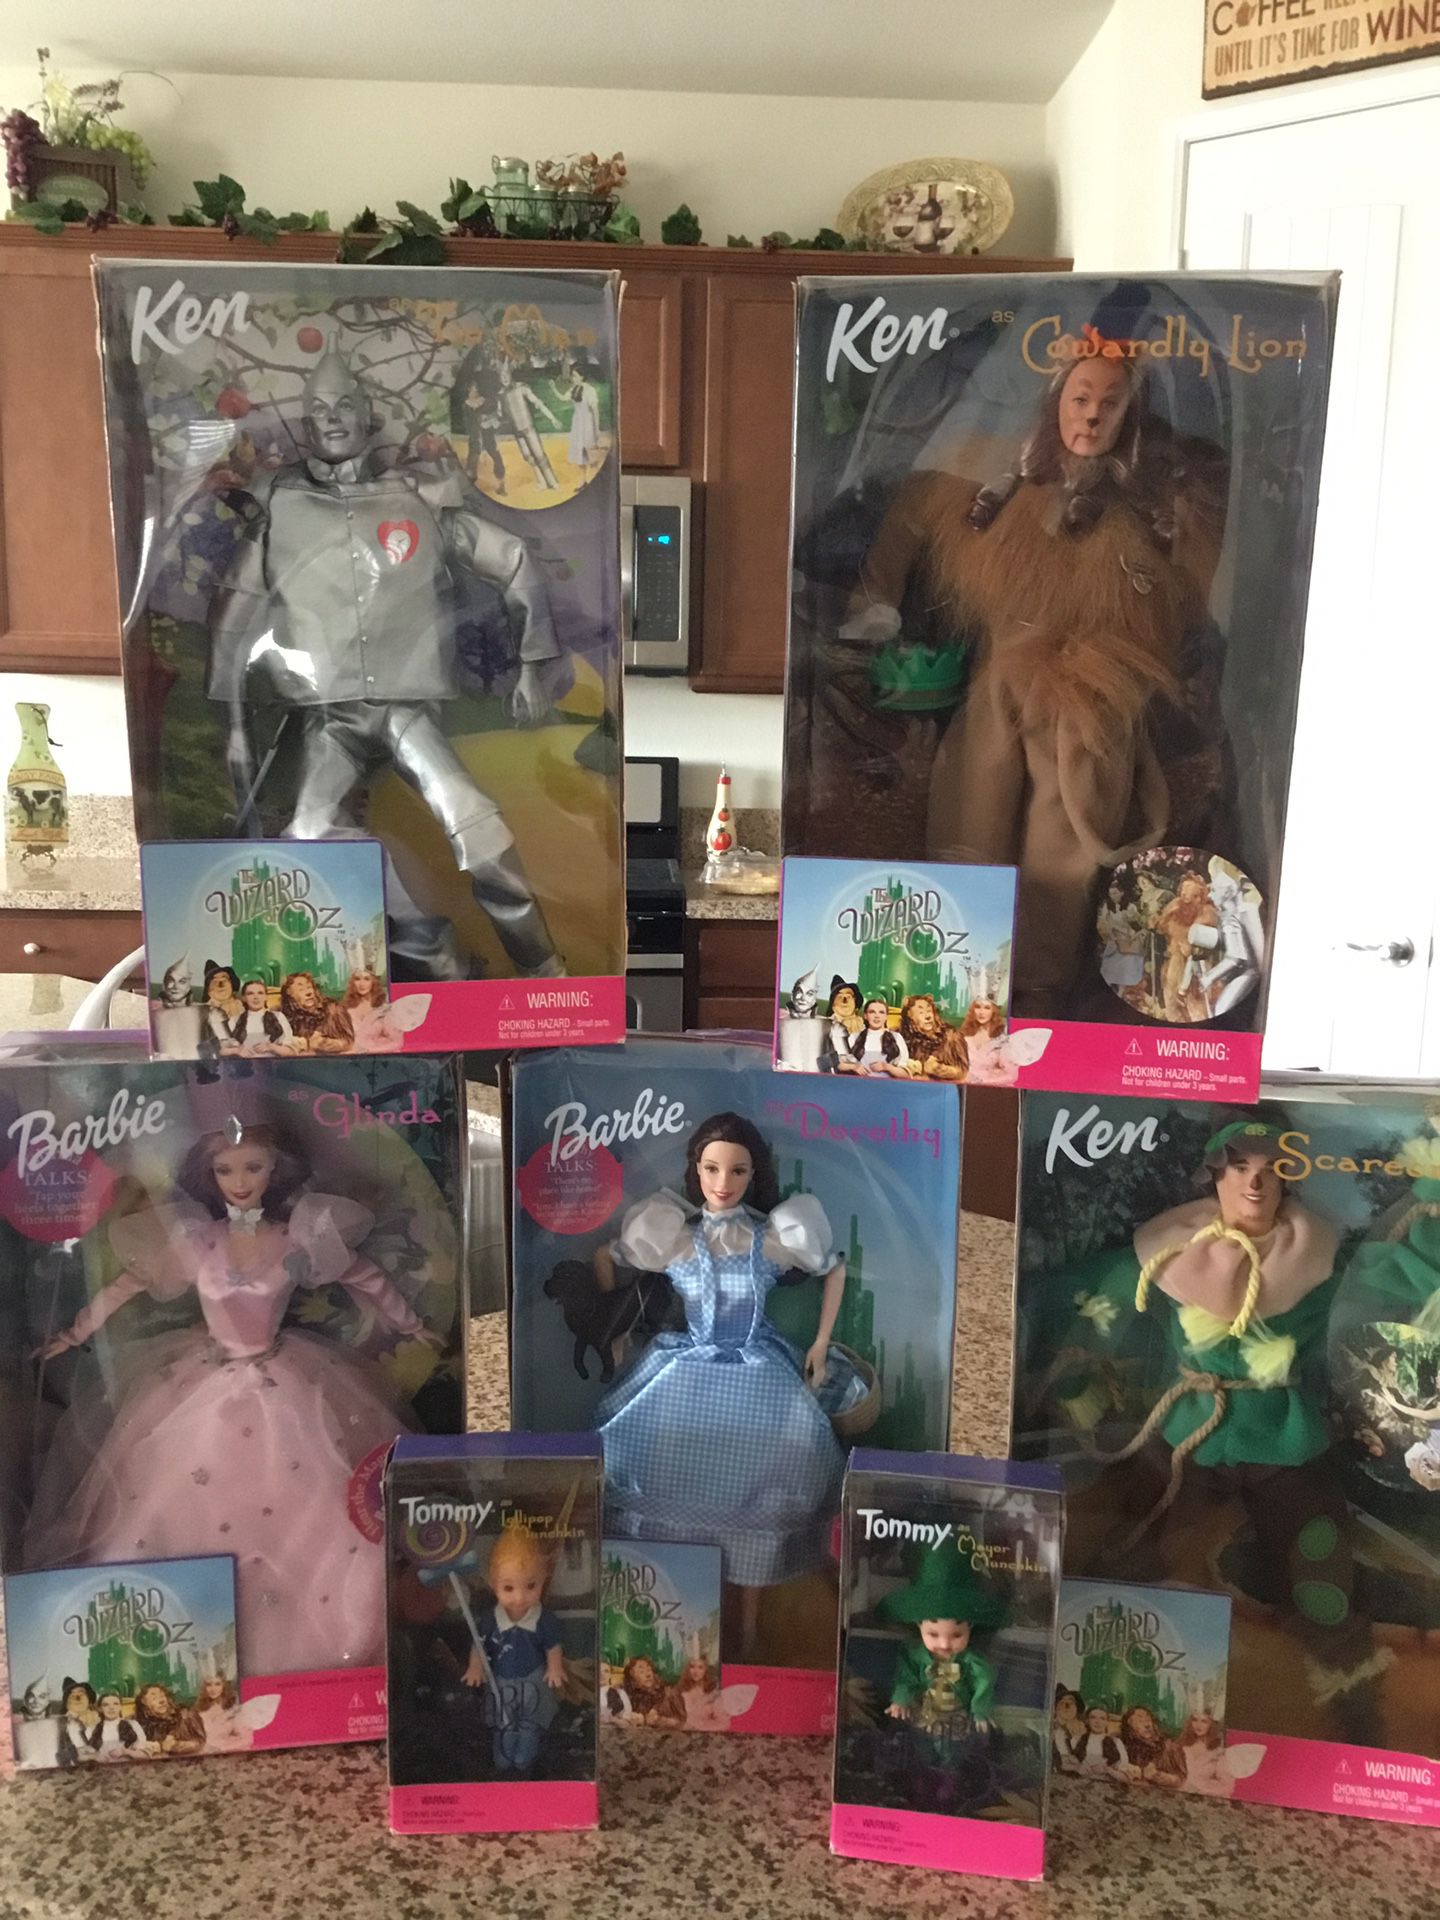 The Wizard of Oz Barbie dolls